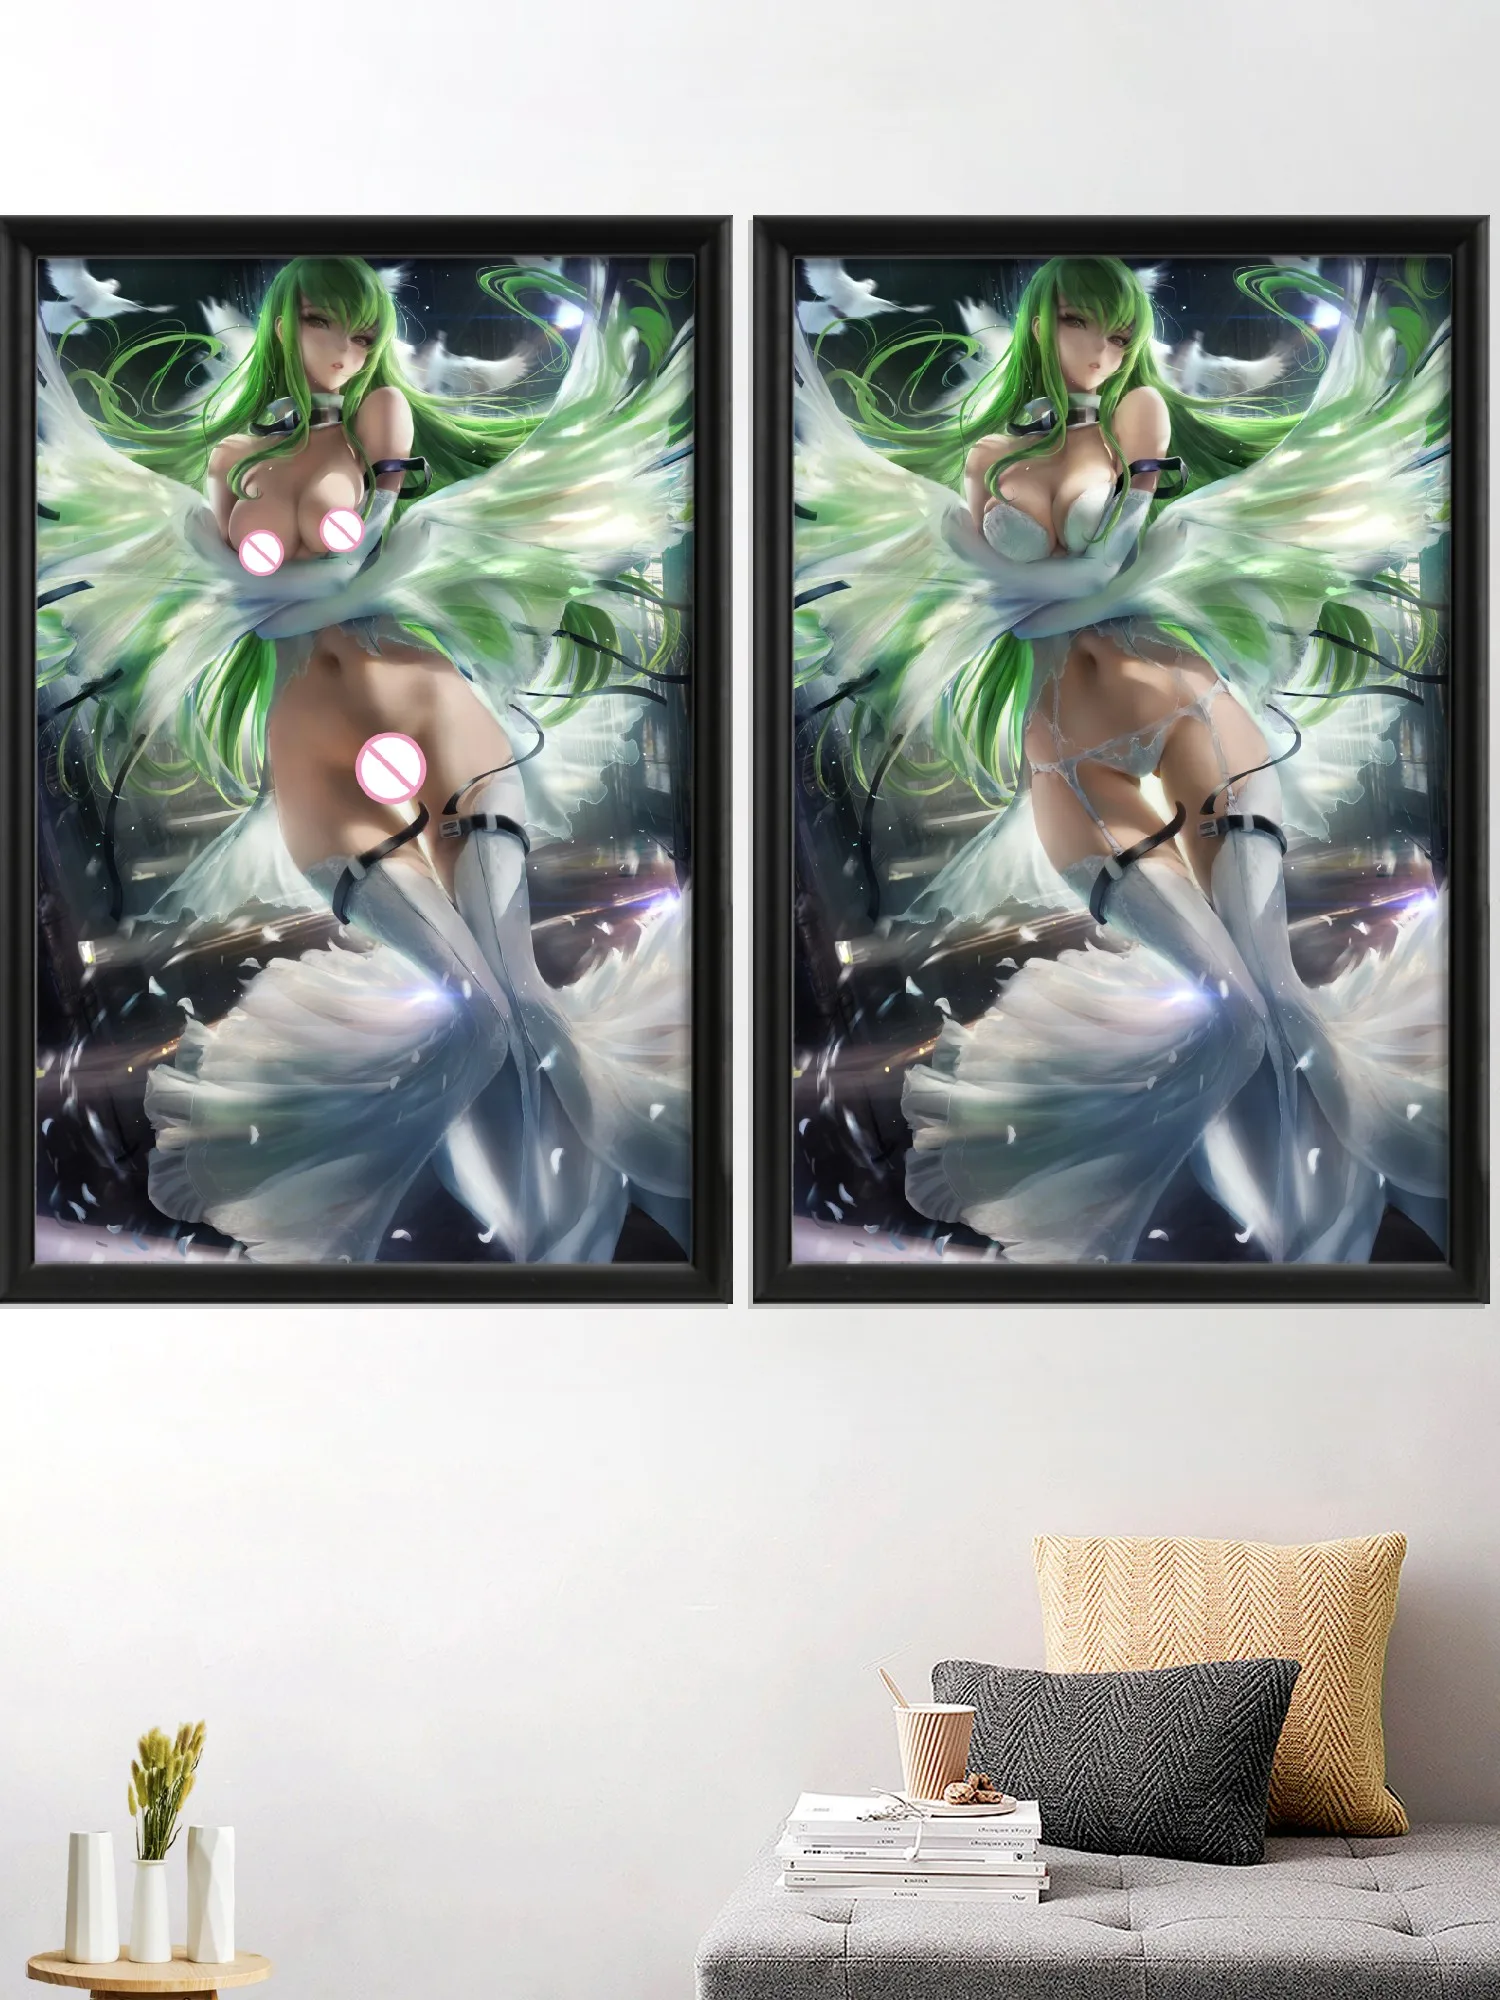 

Код Geass Kallen C.C. Kawaii Code Geass Аниме Сексуальная обнаженная девушка мультфильм арт-постер картина домашний декор на заказ шелковая стена